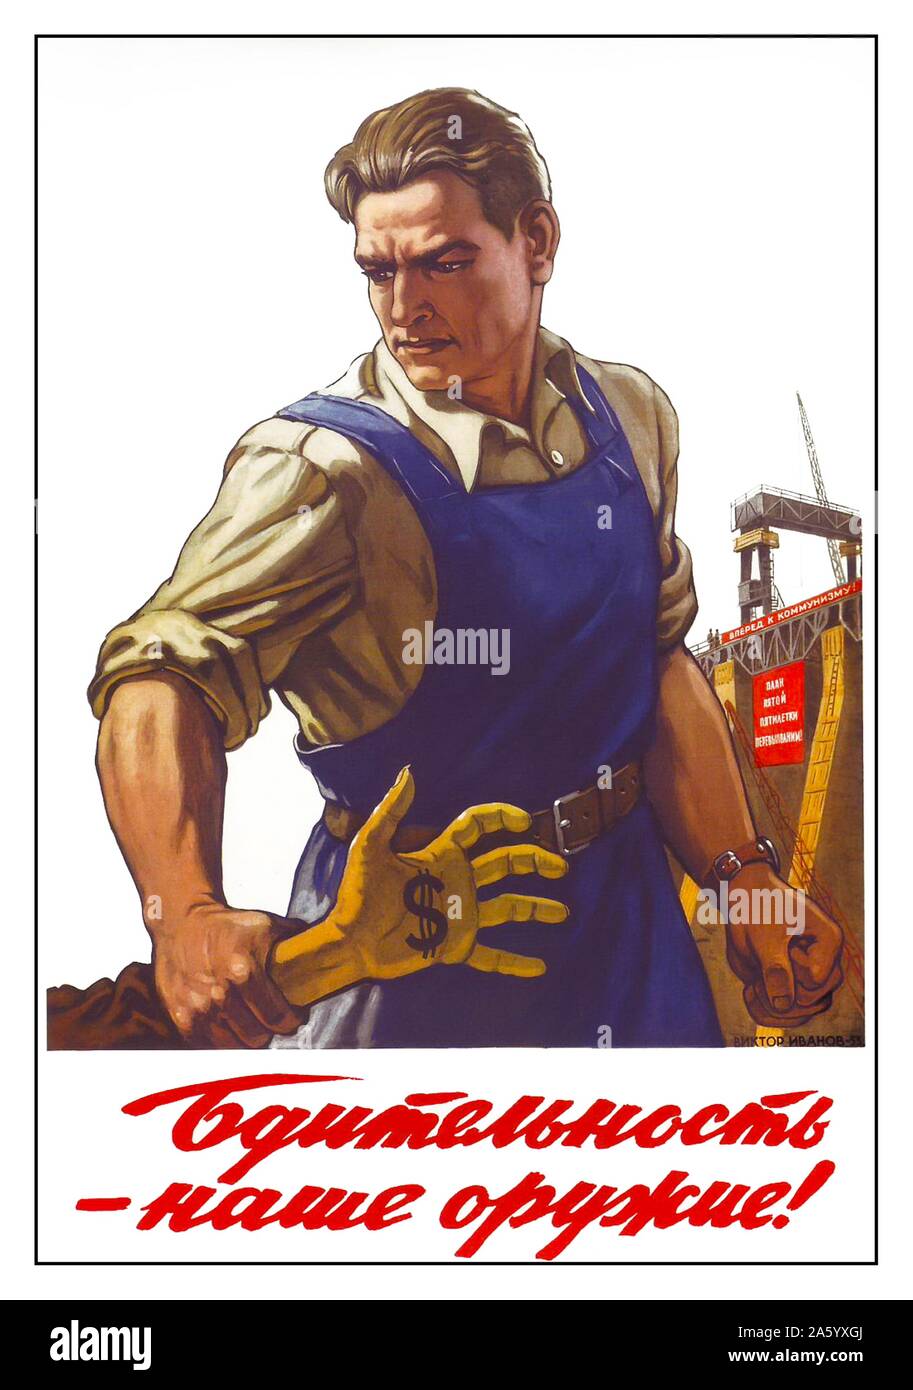 Travaux publics russe soviétique affiche de propagande c1930 Banque D'Images